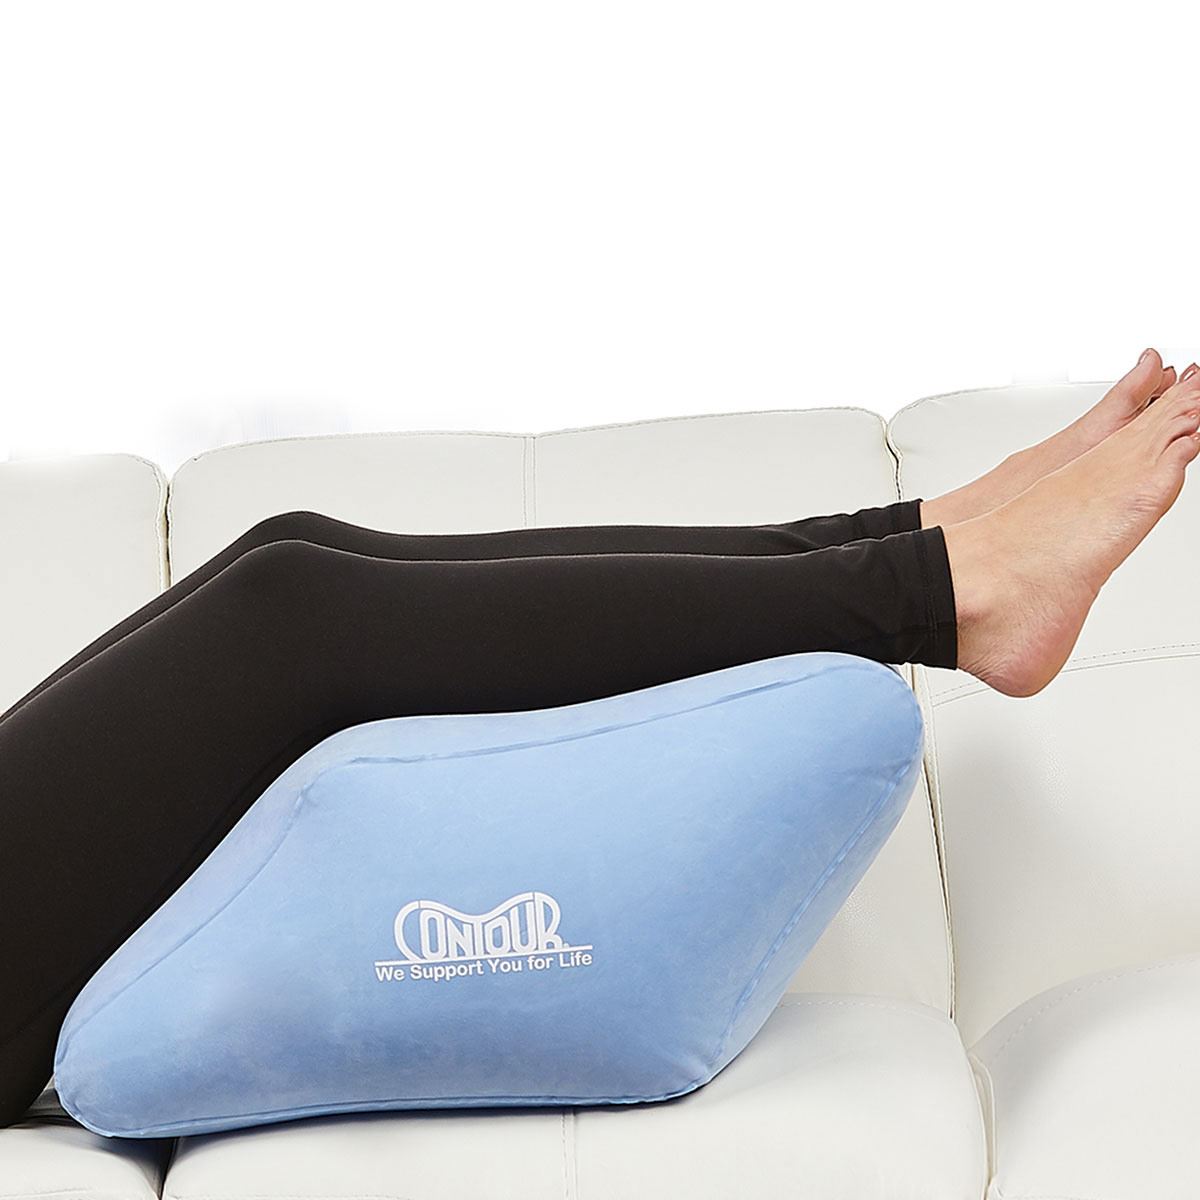 Almohada para piernas y rodillas - Promedis